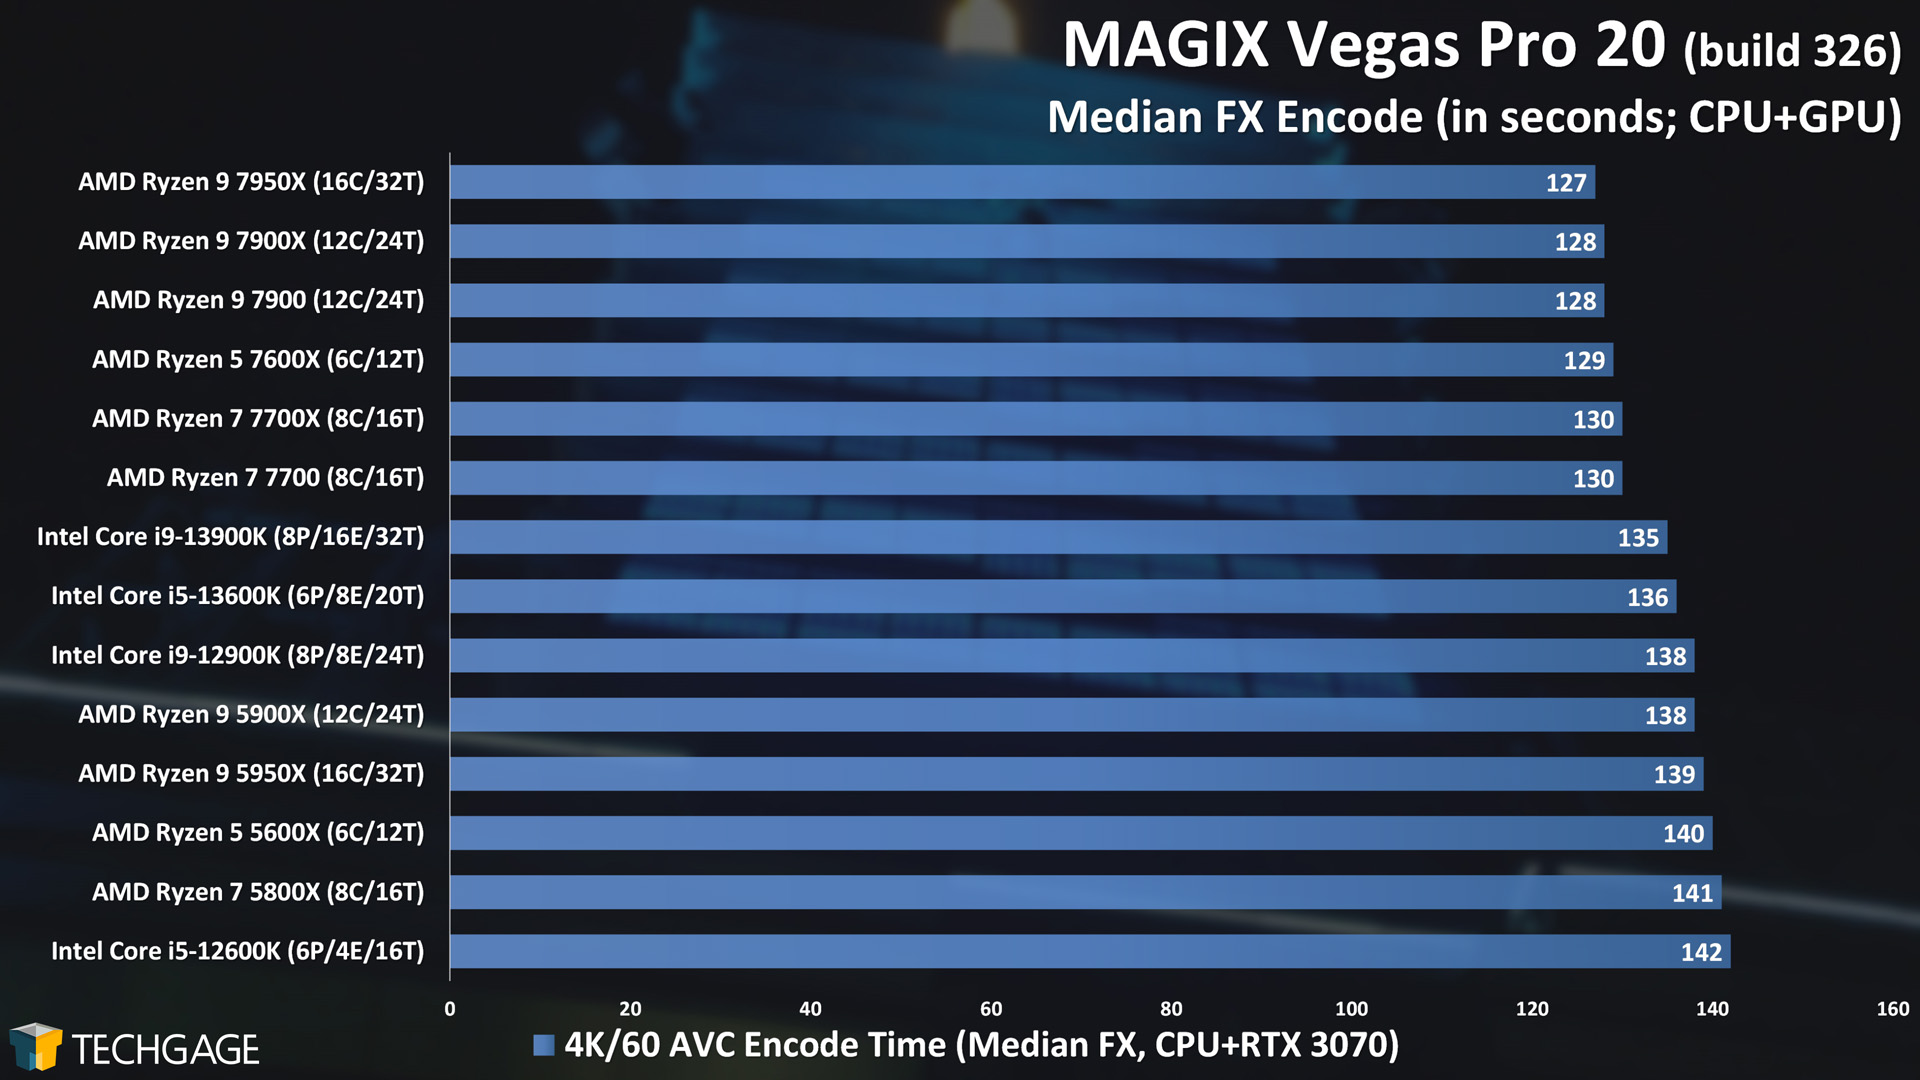 VEGAS Pro - Median FX NVENC Encoding Performance